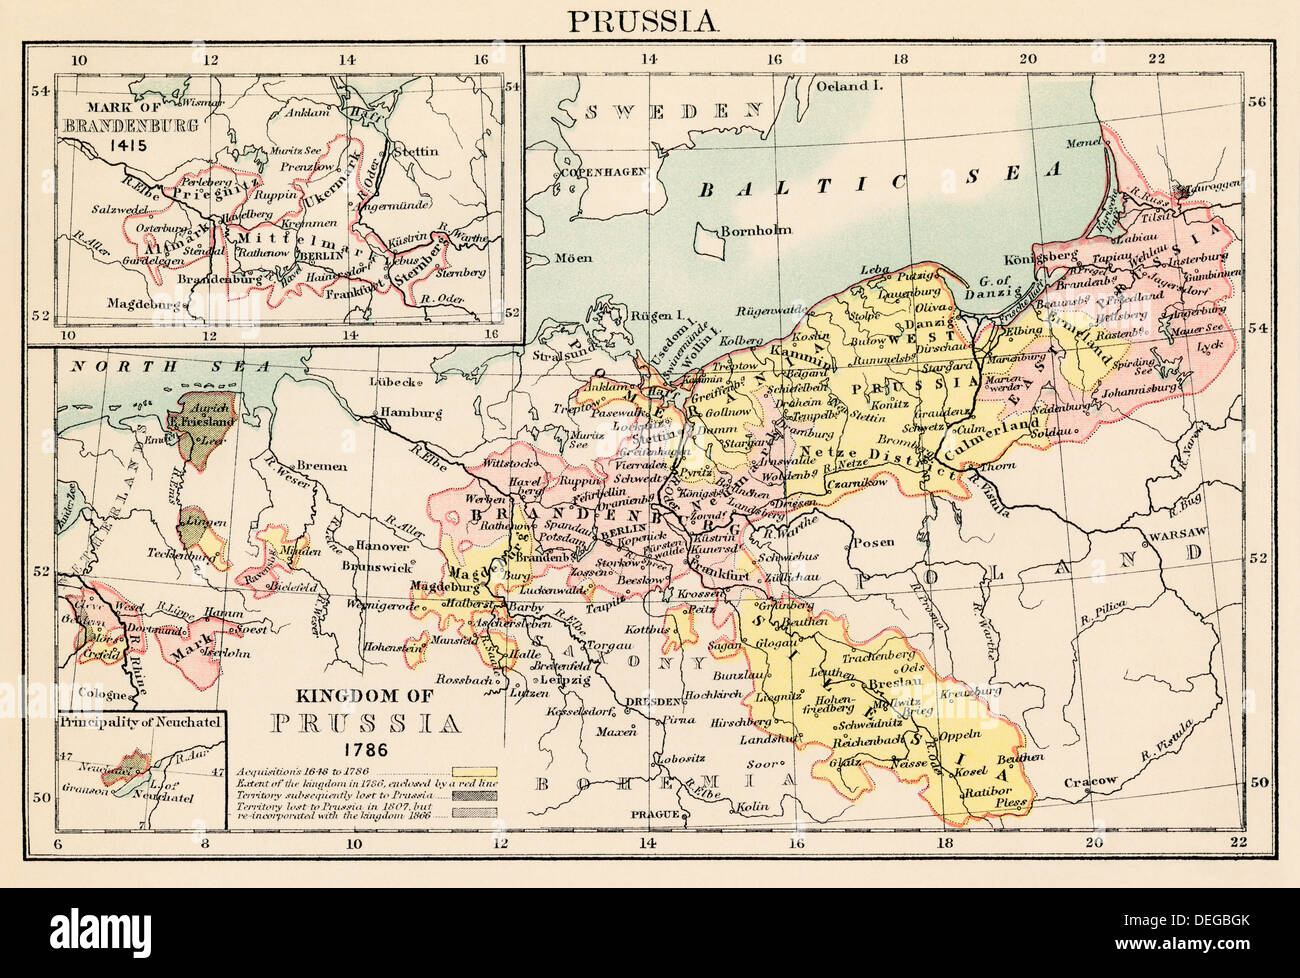 Mappa del Regno di Prussia nel 1786, e Brandeburgo nel 1415. Litografia a colori Foto Stock